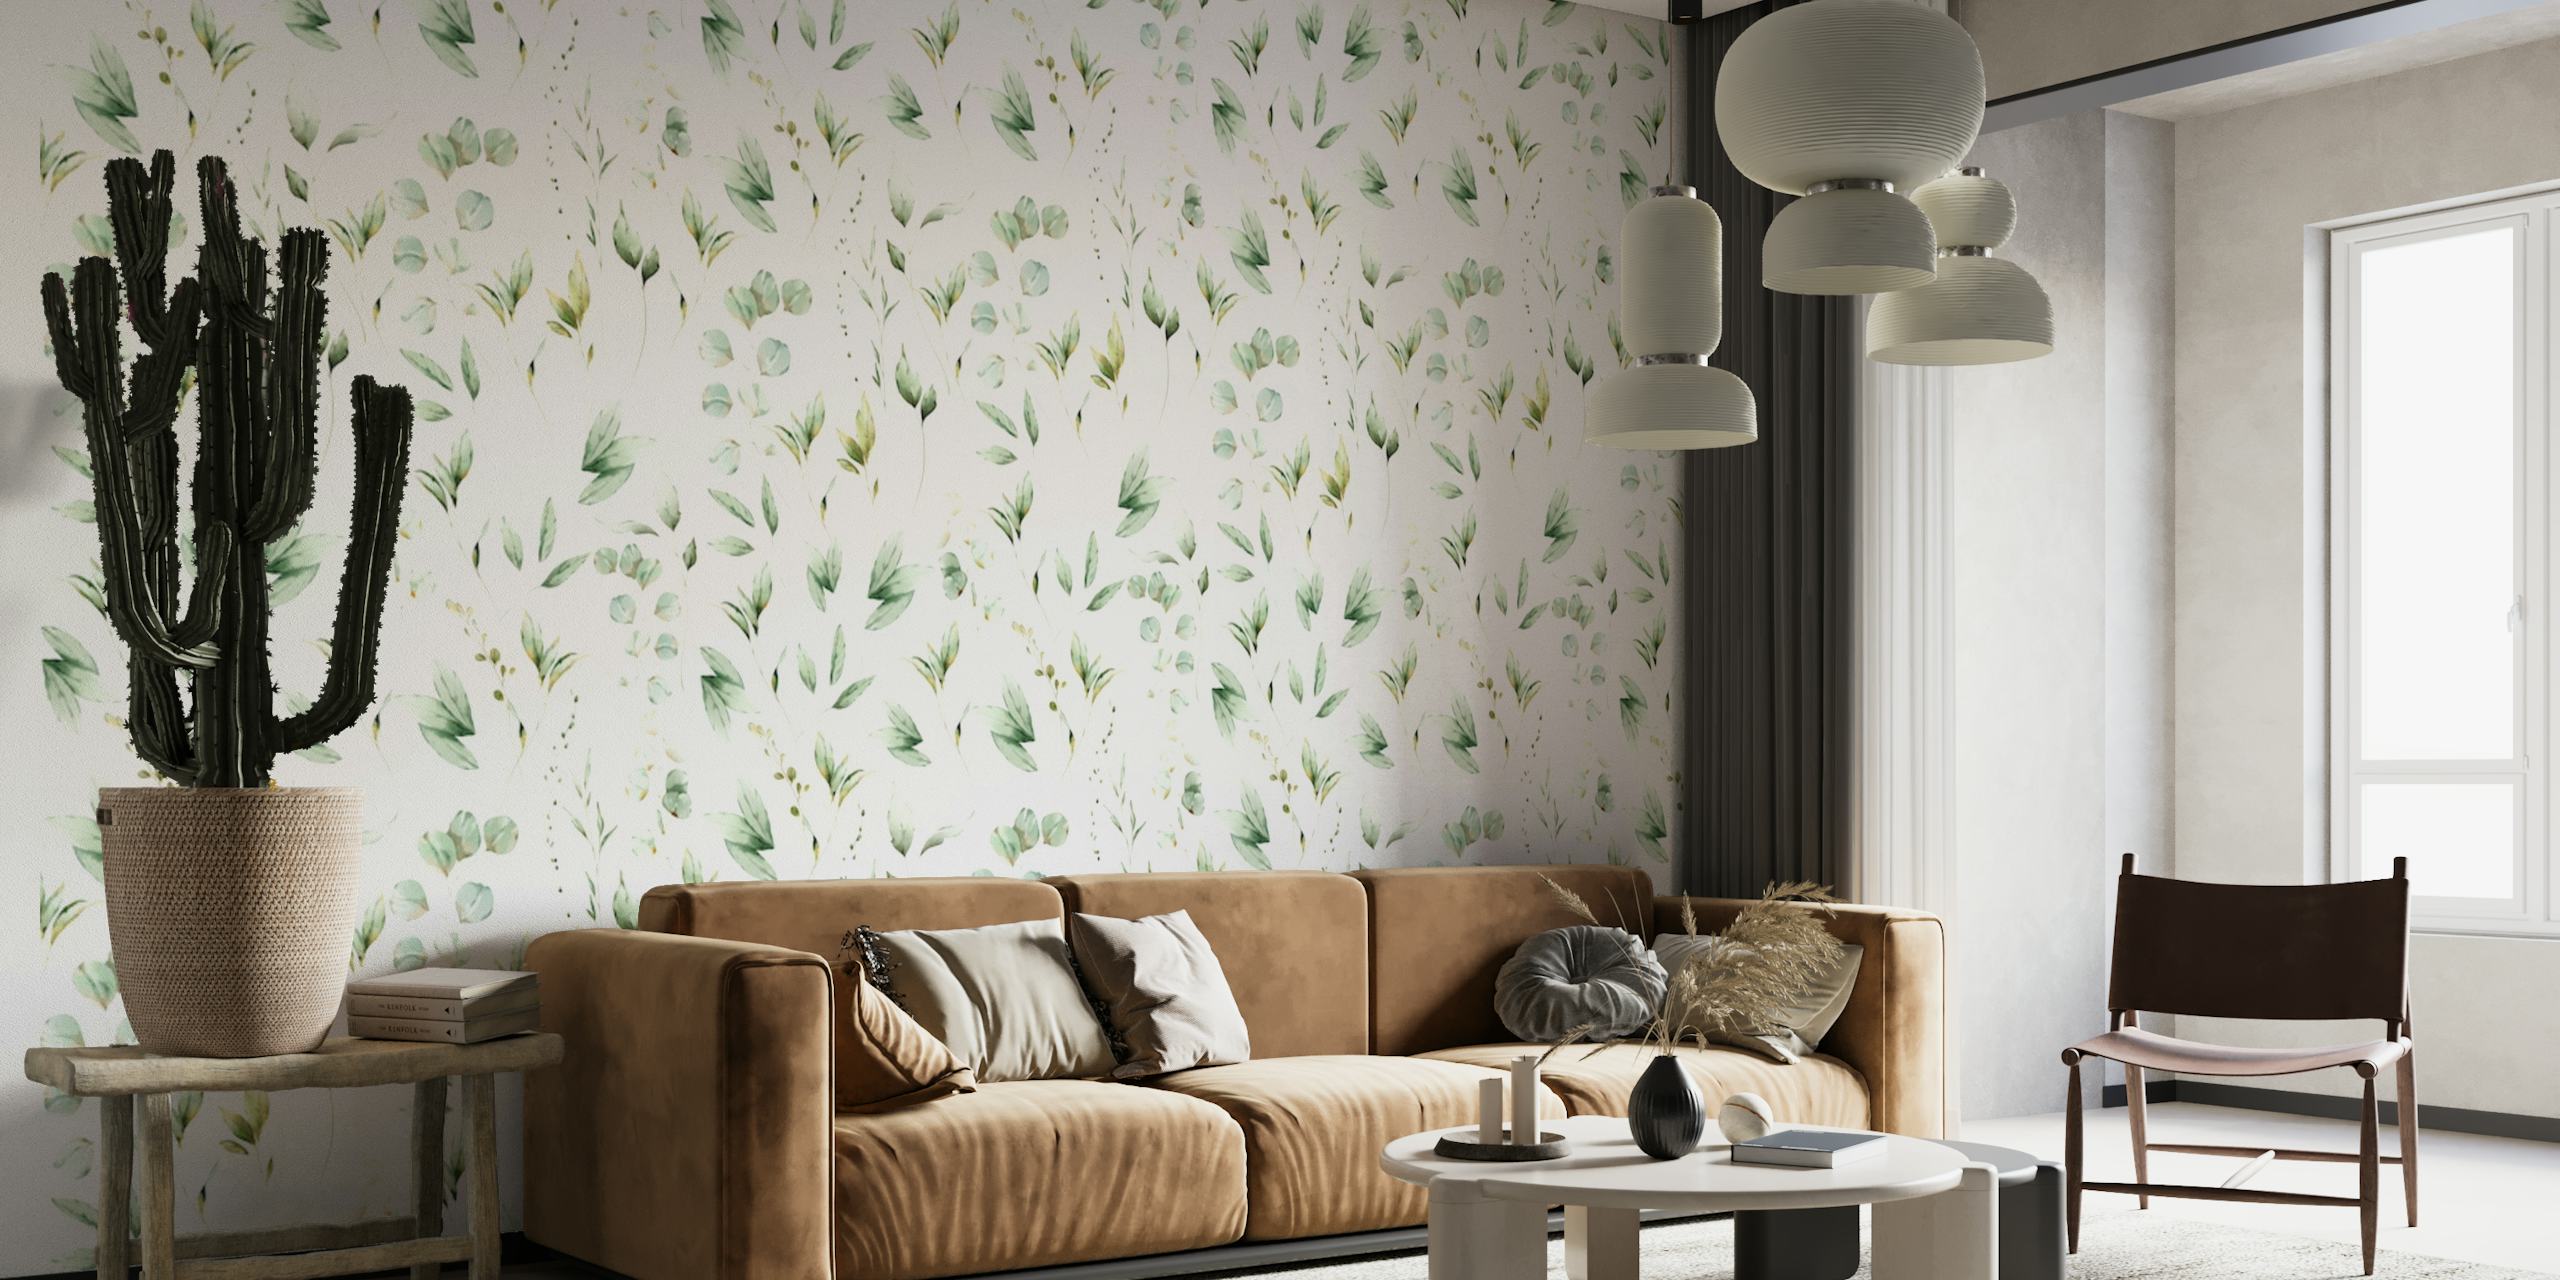 Soft Green Leaves wallpaper